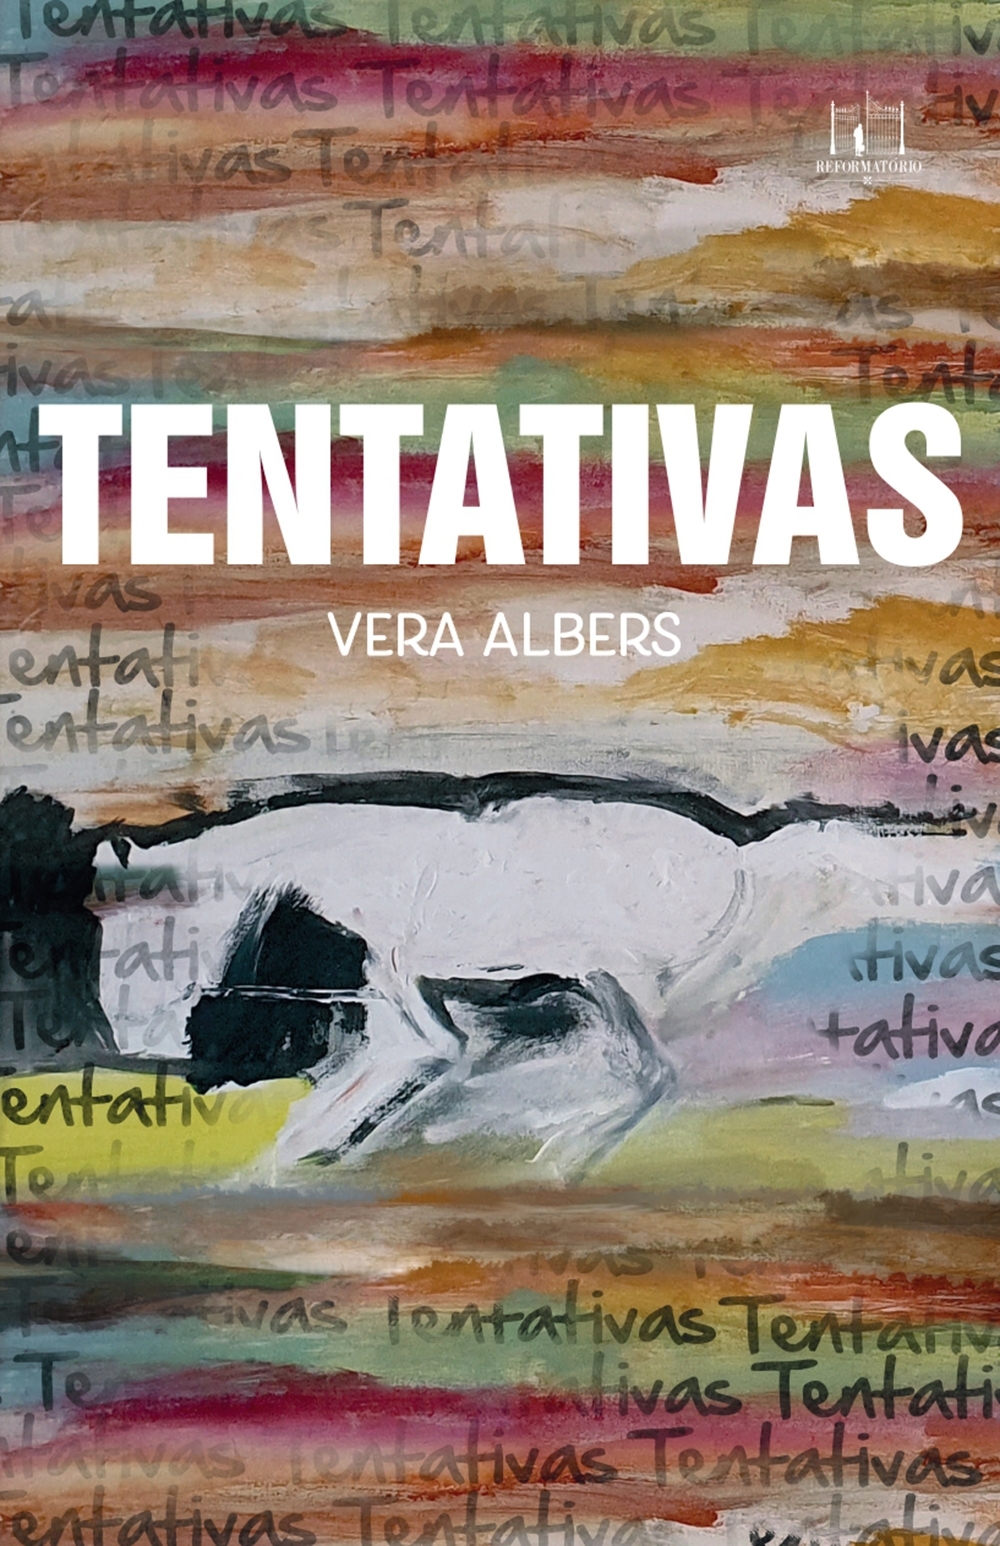 Vera Albers - Romance Tentativas, de Vera Albers,  faz da linguagem visual abarcar a obra como espaço tão imagético da vida | Fernando Andrade